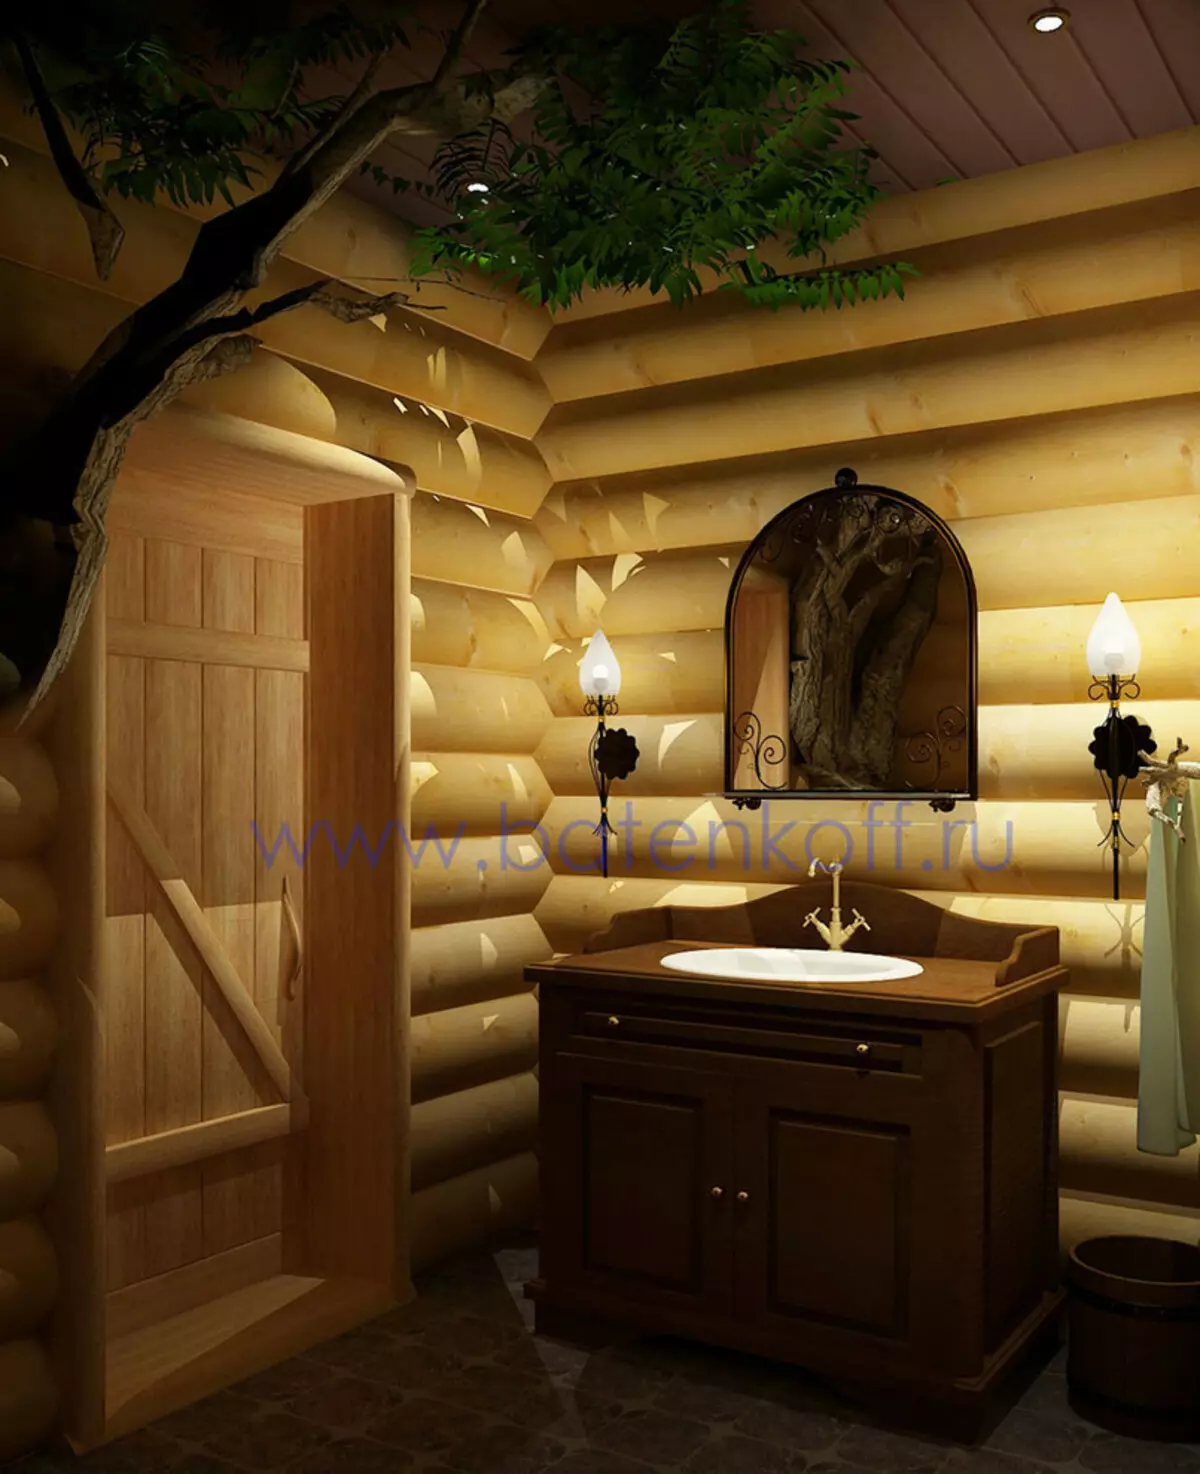 Μπάνιο σε ξύλινο σπίτι (76 φωτογραφίες): Σχεδιασμός δωματίου σε ένα σπίτι ενός μπαρ στη χώρα, παραδείγματα φινίρισμα δαπέδου, συστήματα εξαερισμού 10475_62